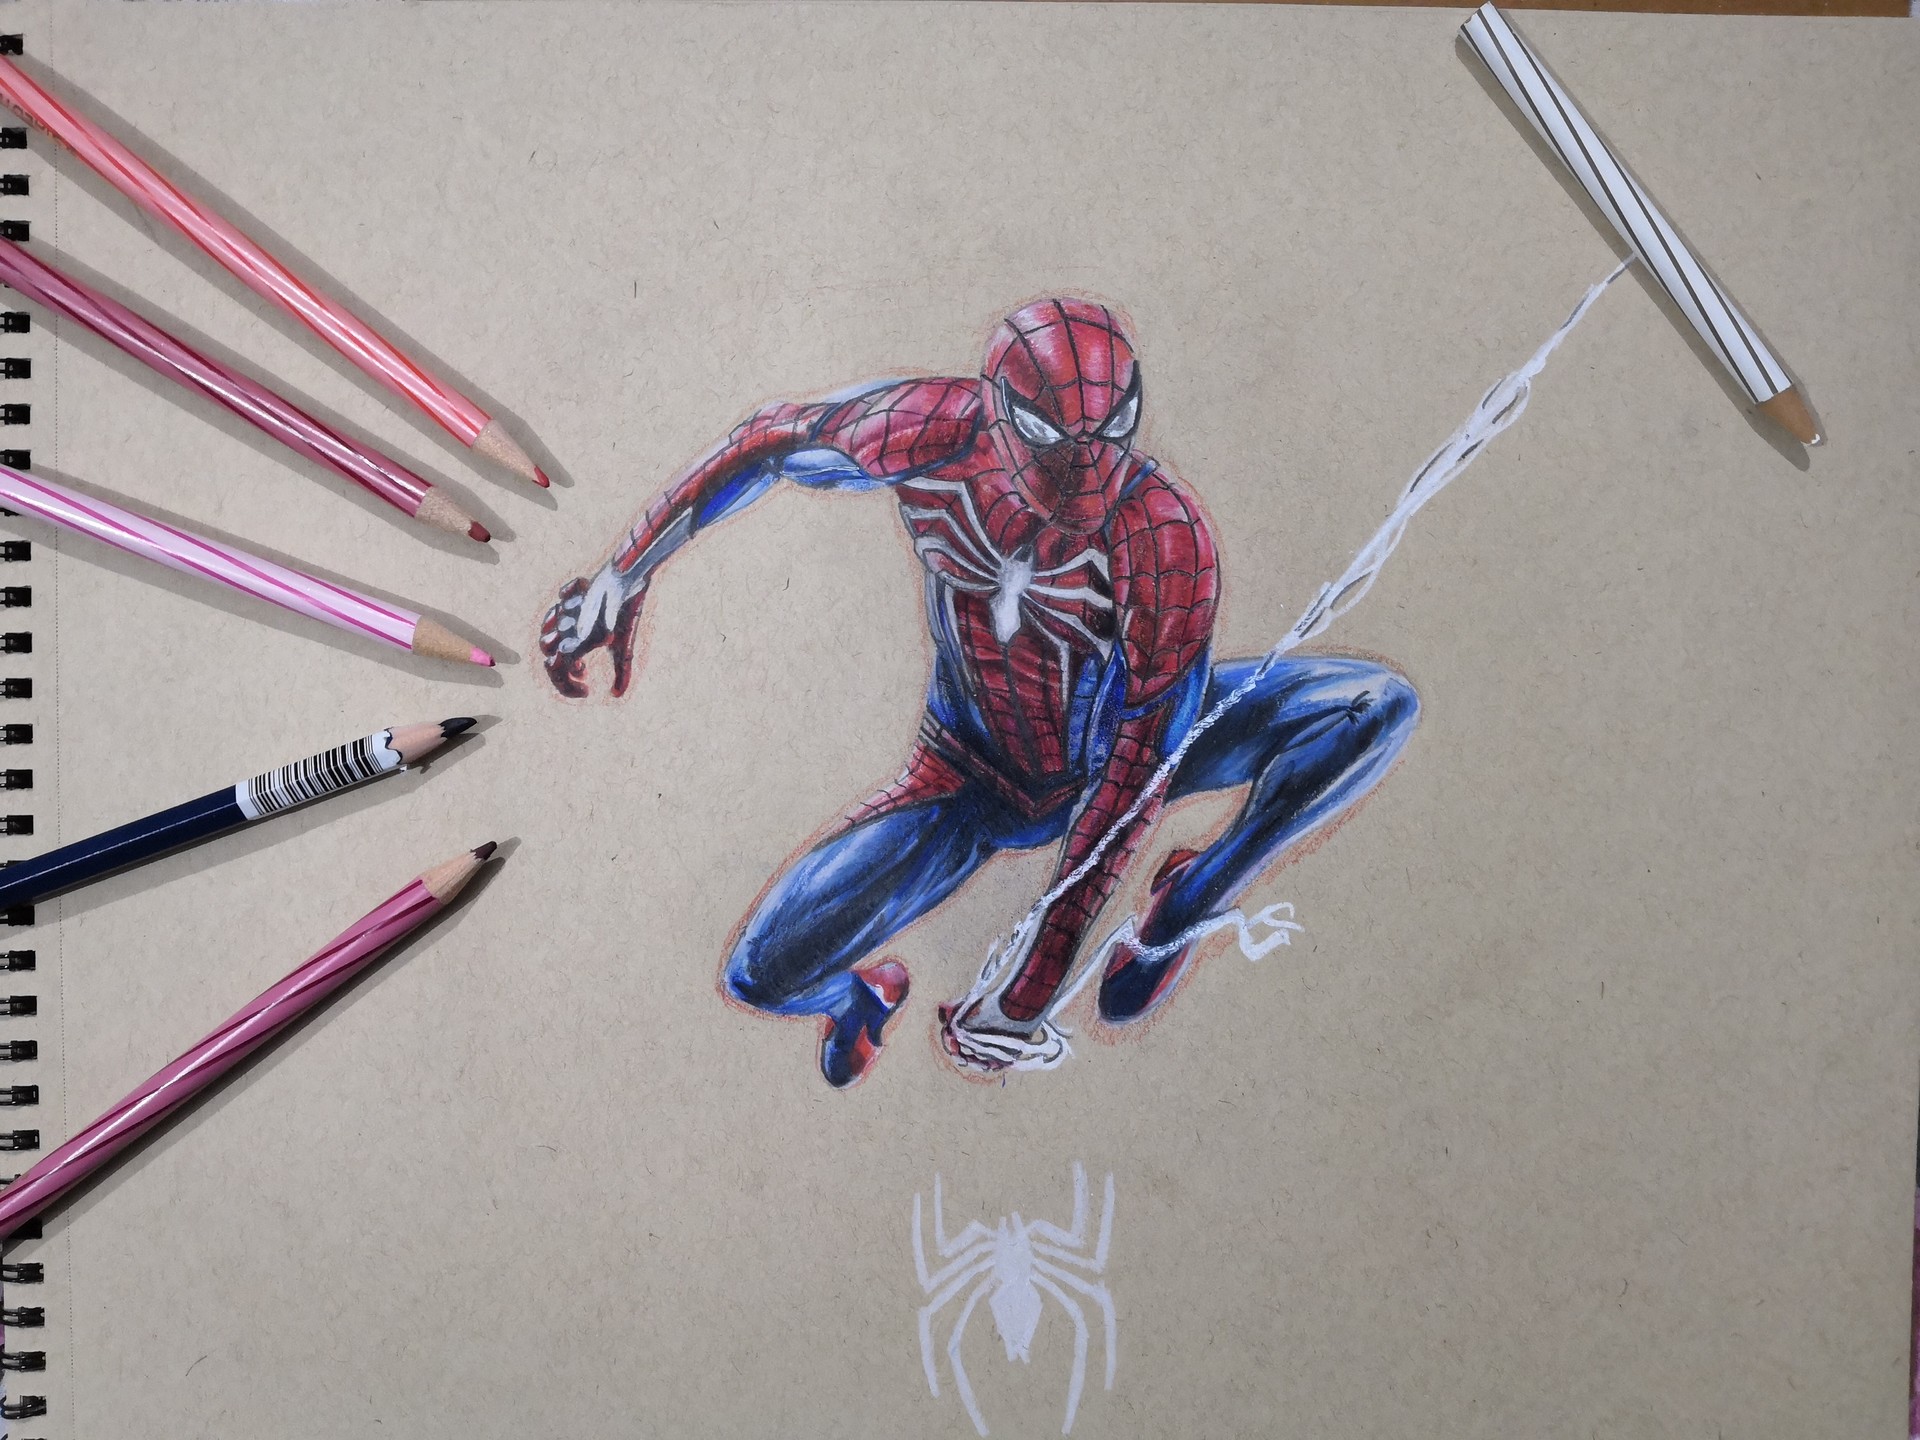 Himanshu Pandey - Spiderman PS4 colored pencil sketch